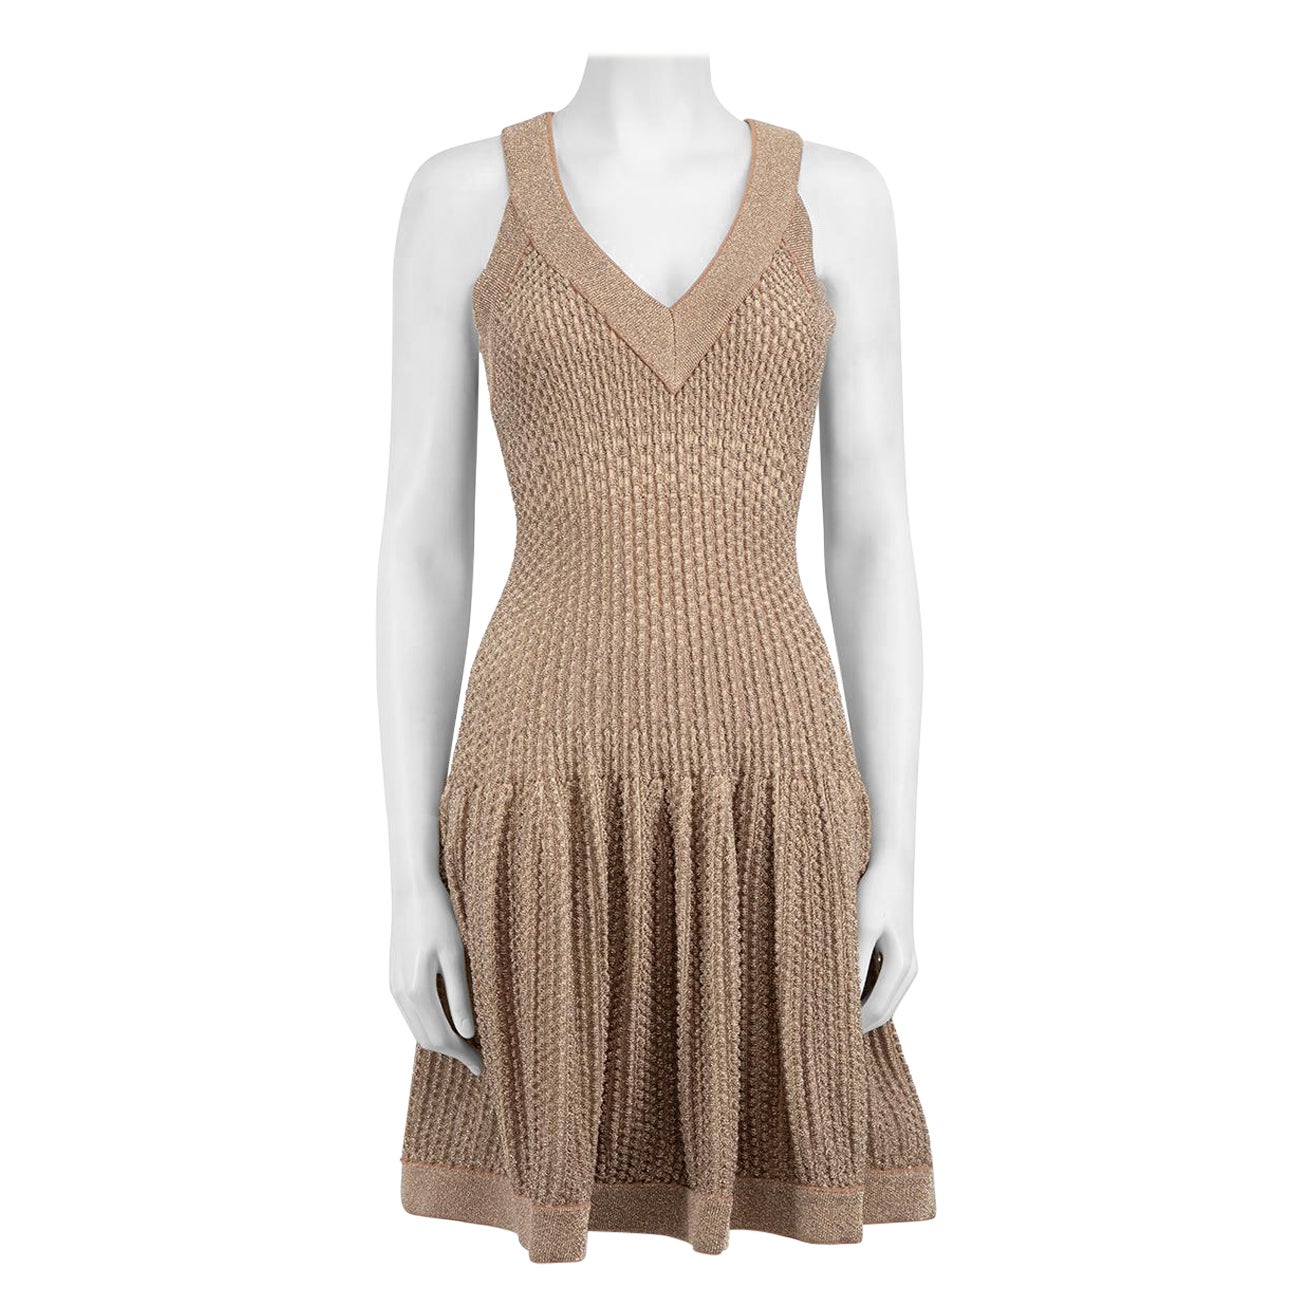 Alaïa Beige Metallic Textured Knit Mini Dress Size L For Sale